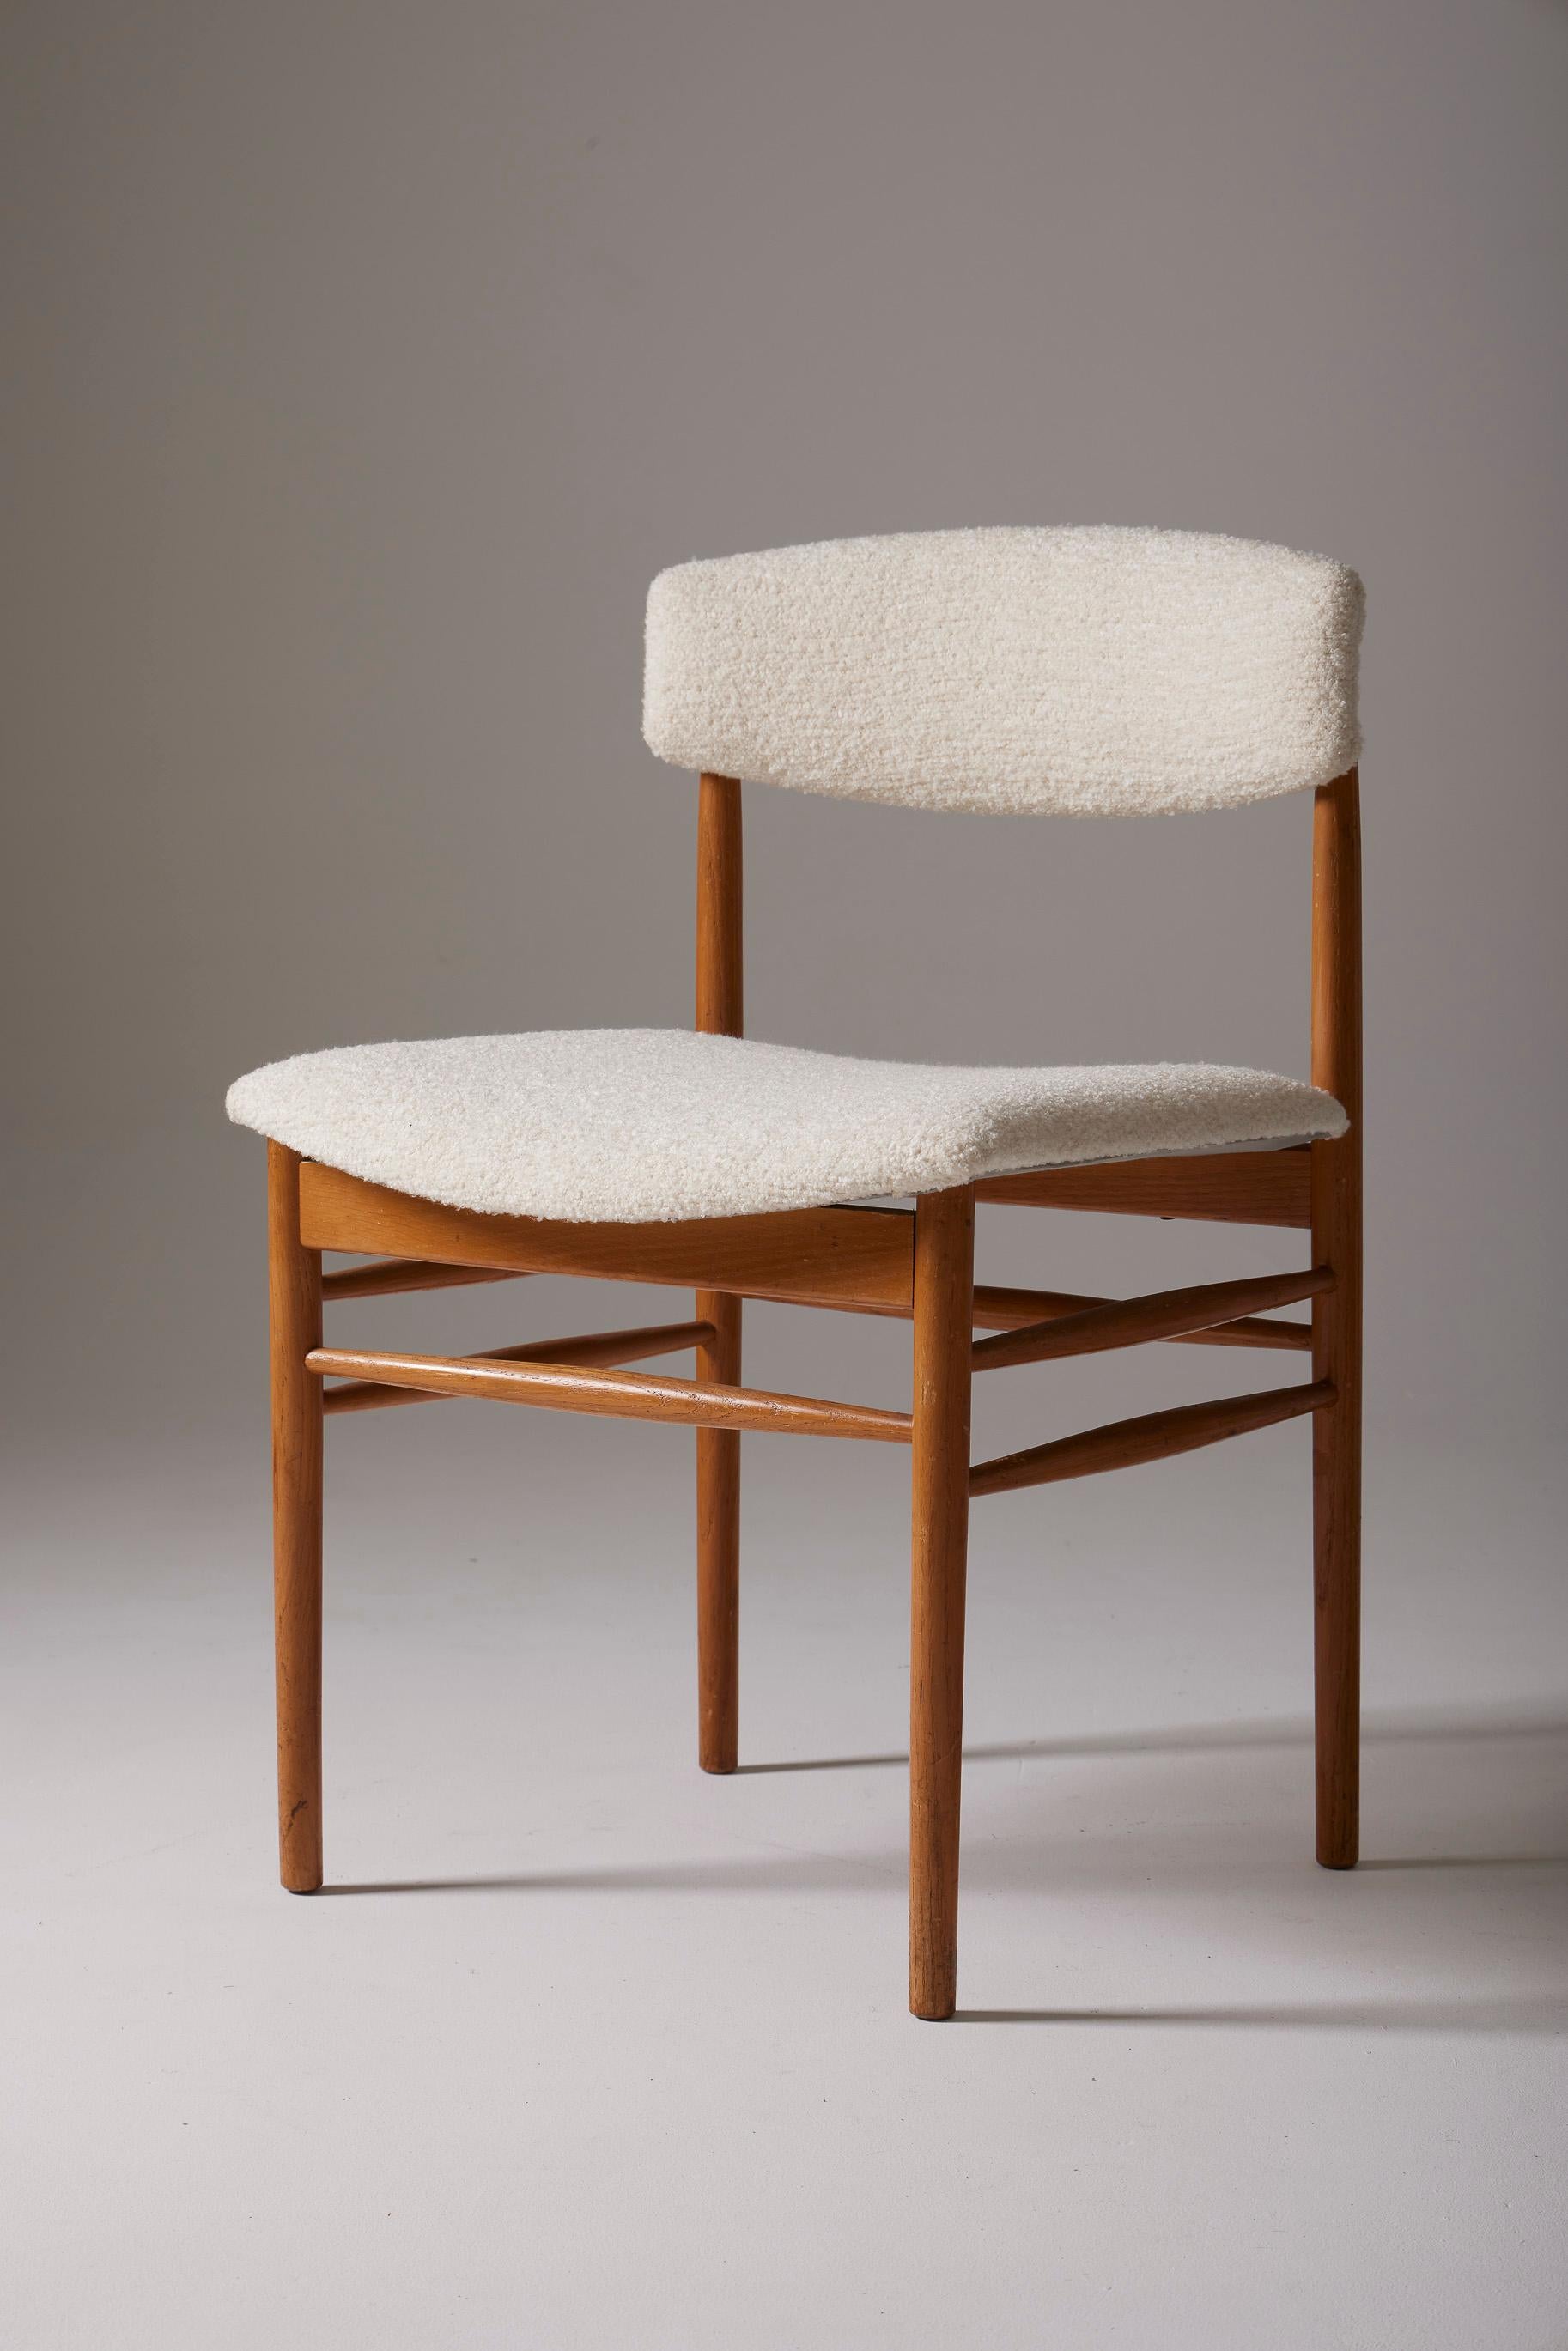  Ensemble de 4 chaises de style scandinave, l'assise et le dossier ont été retapissés avec un tissu bouclé blanc de haute qualité et une structure en bois. En très bon état.
DV219